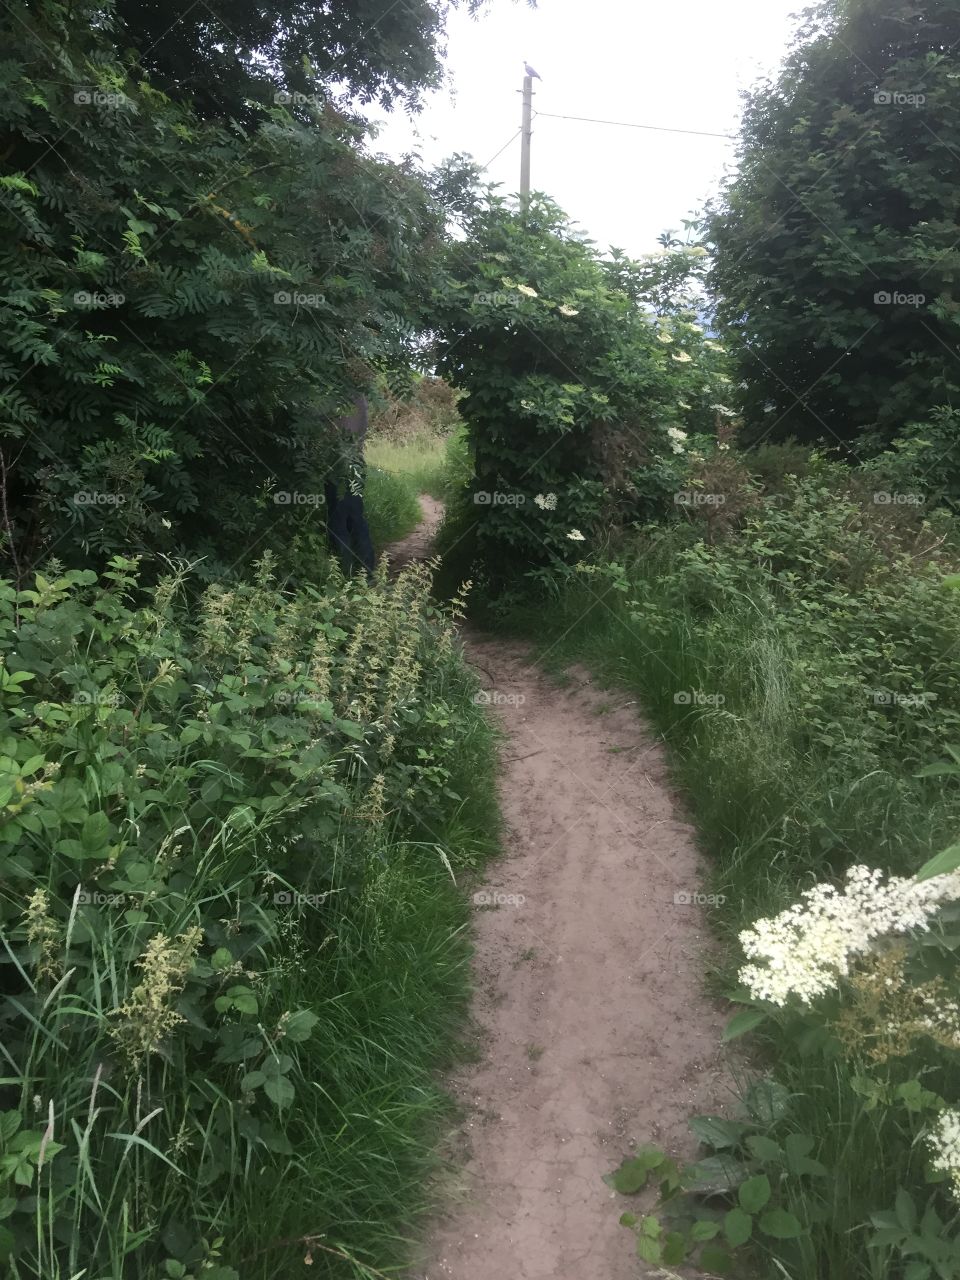 Pathway across the Moor, England 